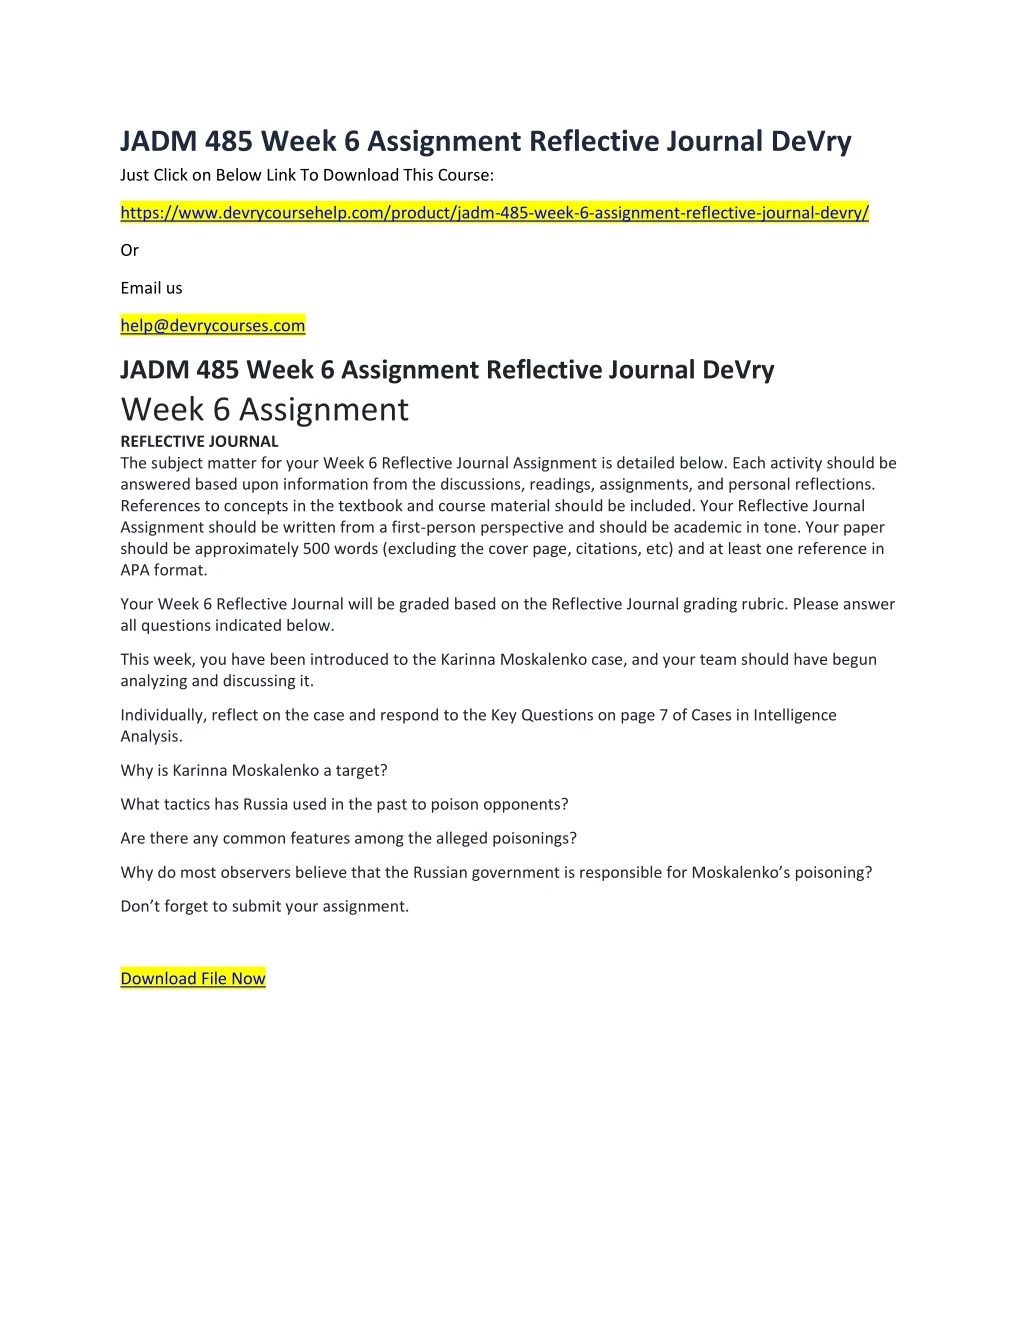 jadm 485 week 6 assignment reflective journal